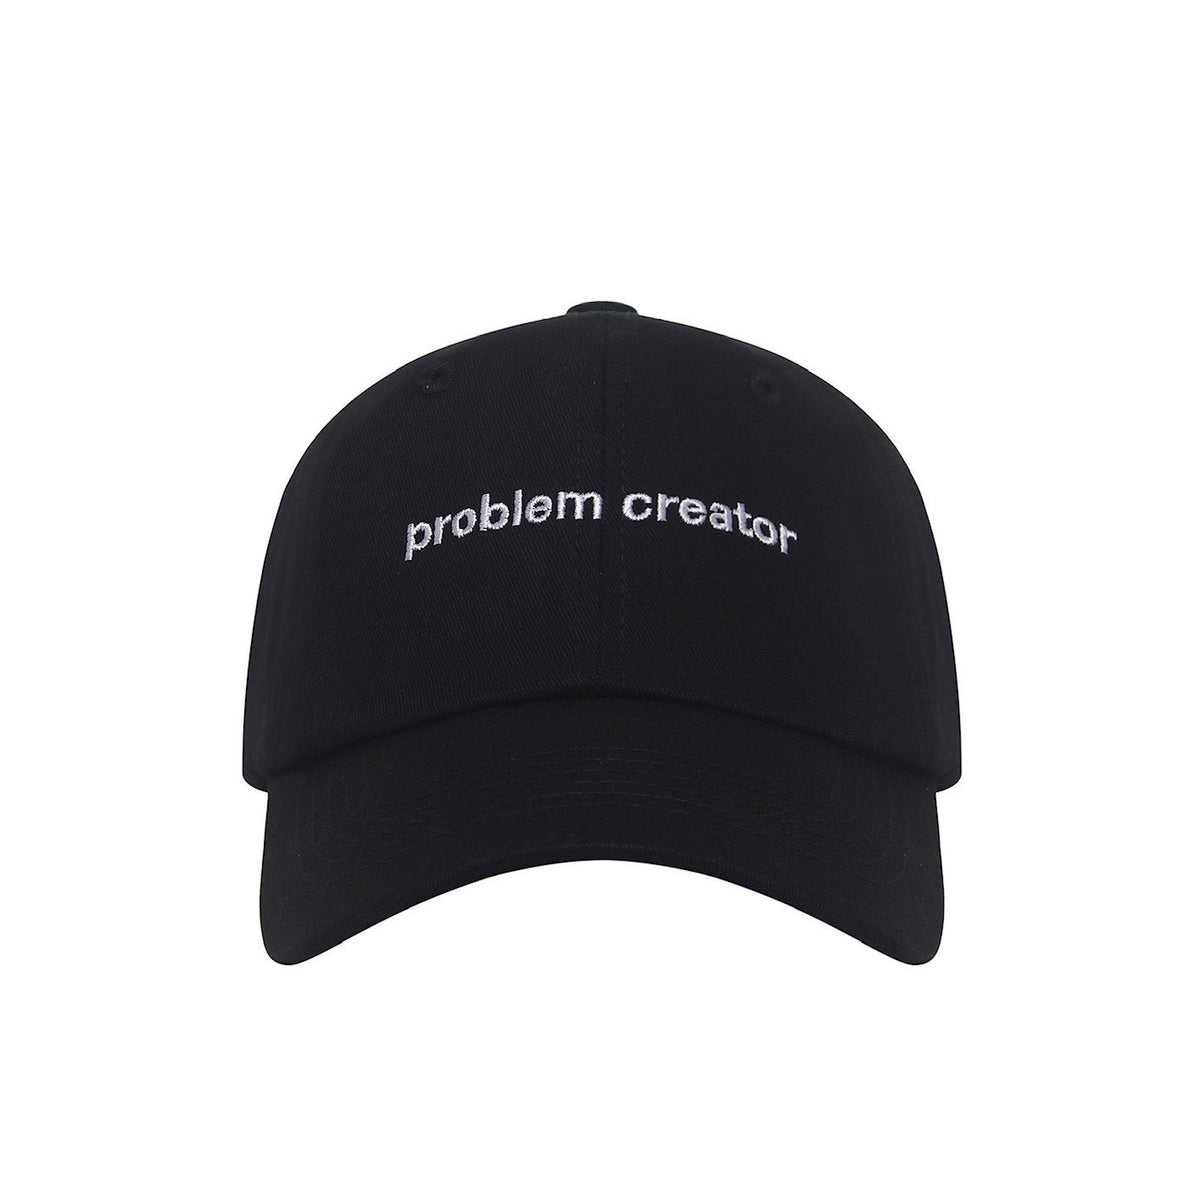 FENG PROBLEM CREATOR CAP